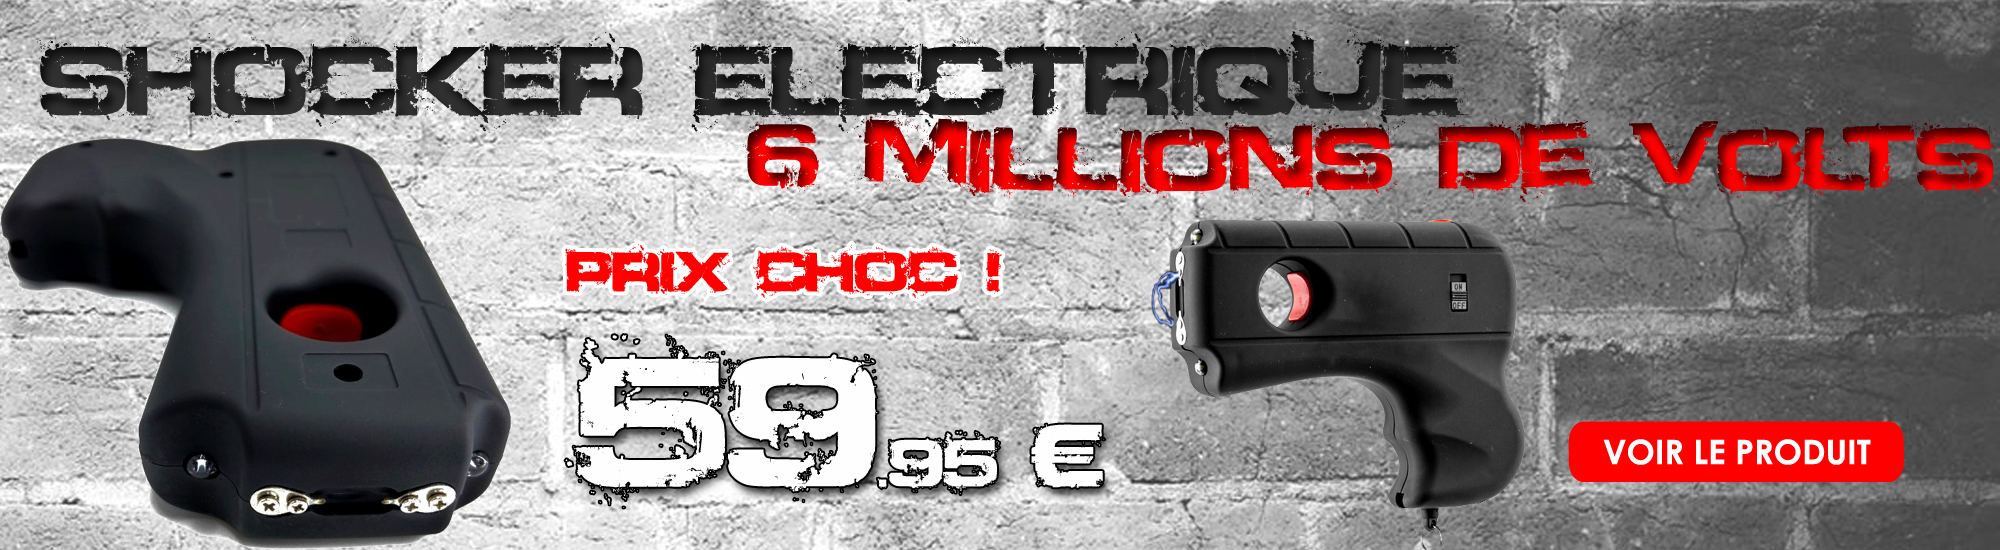 Taser shocker tazer 10 000 000 volts ! LED - Design pistolet